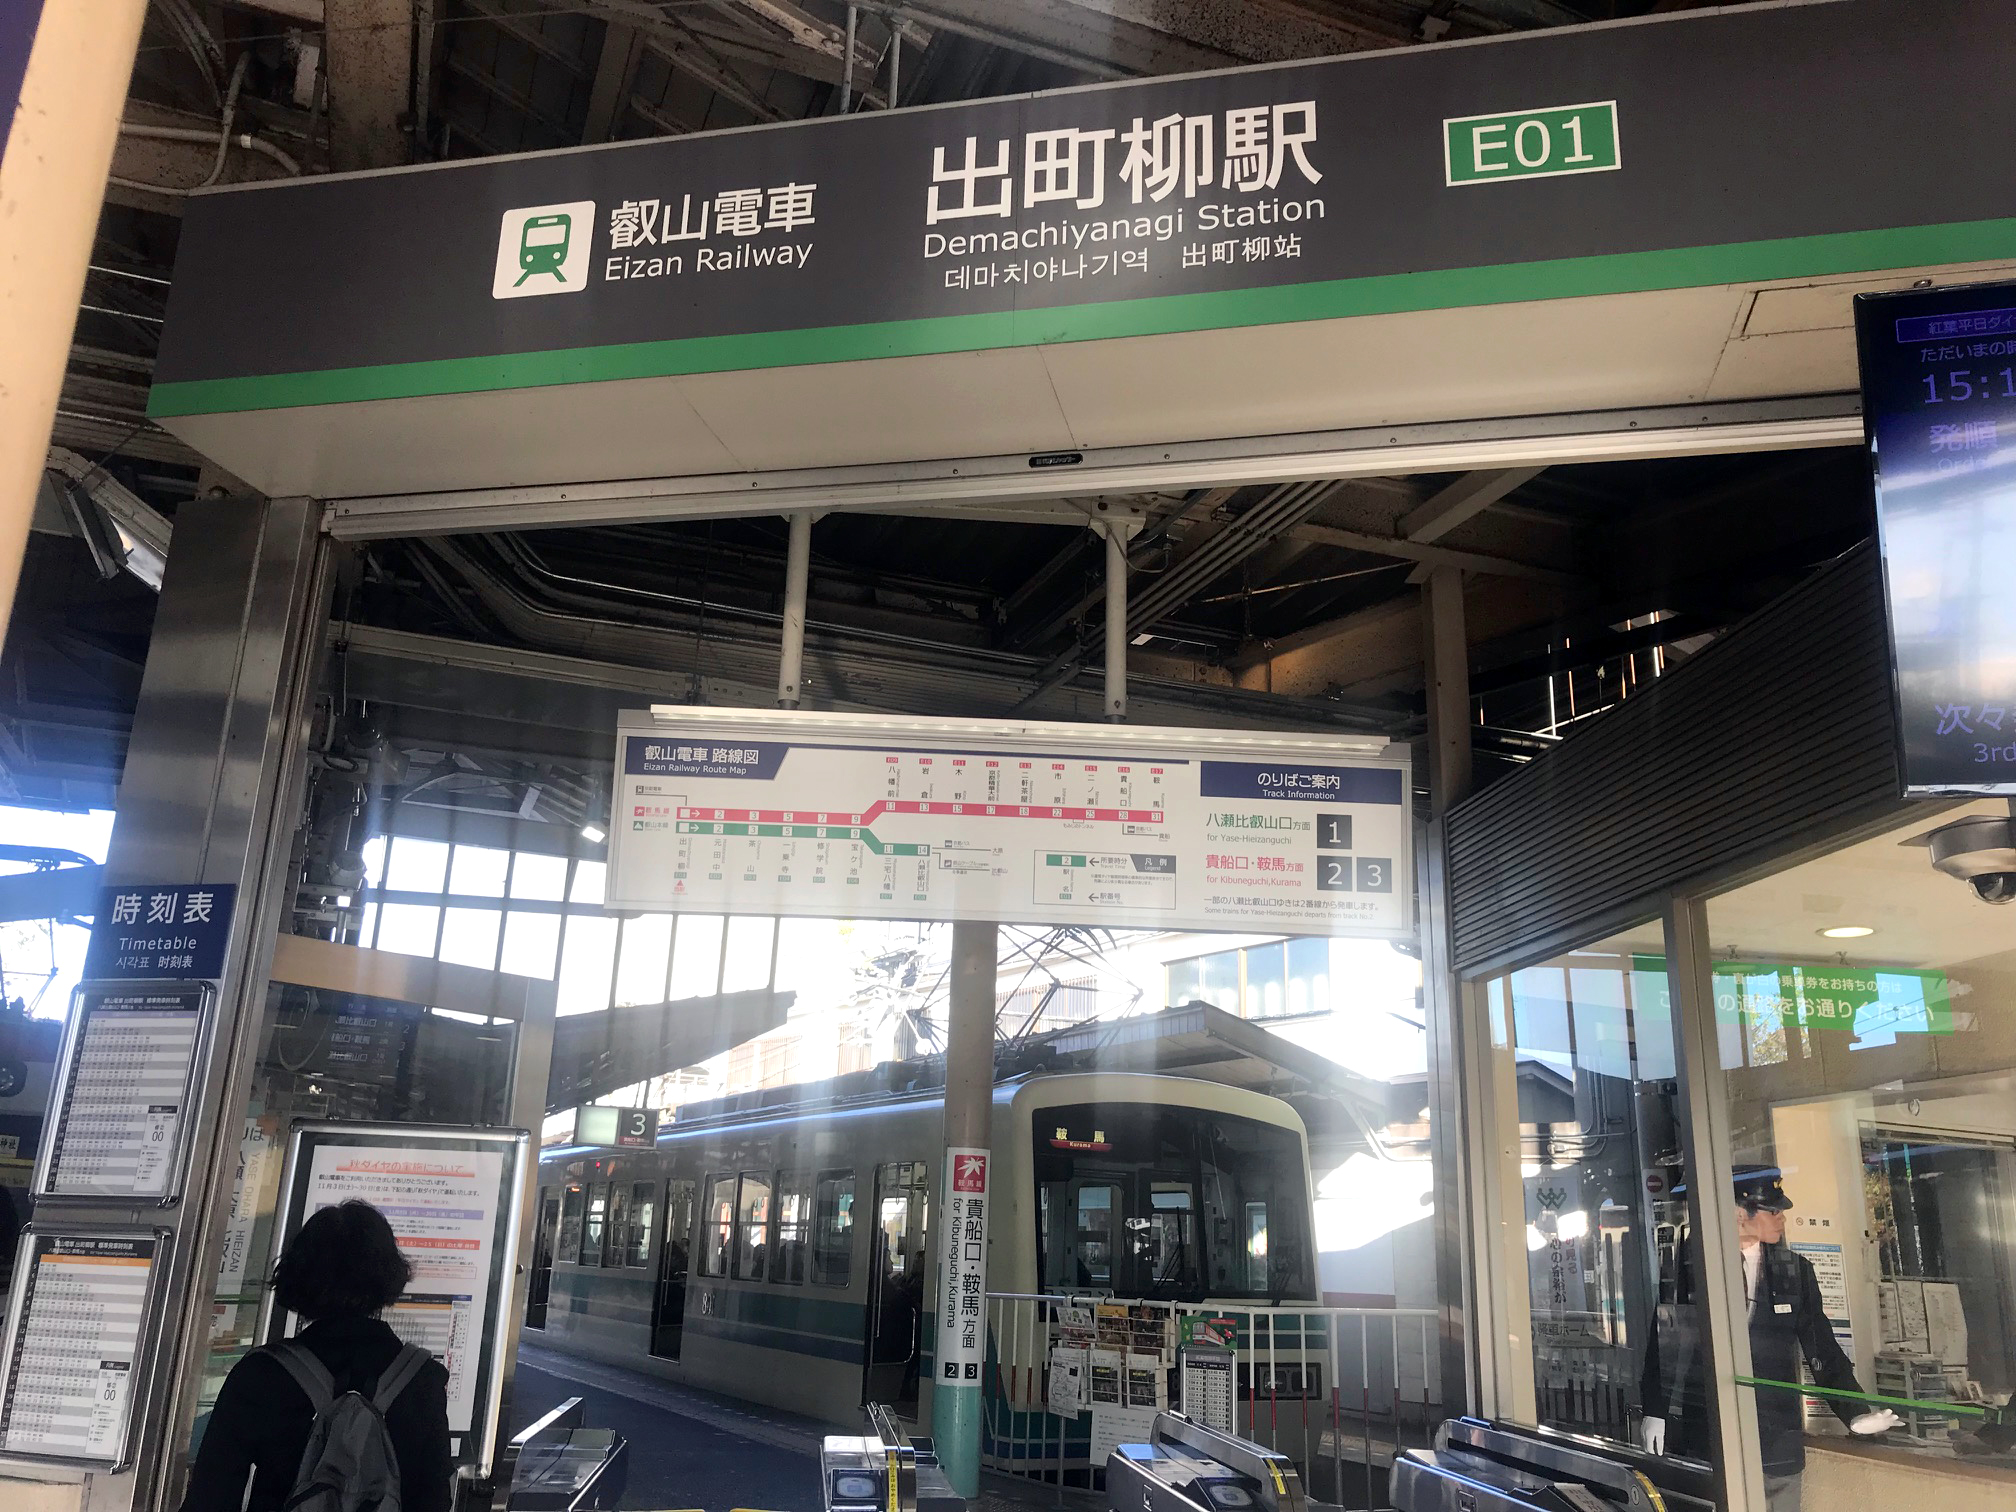 Demachiyanagi station